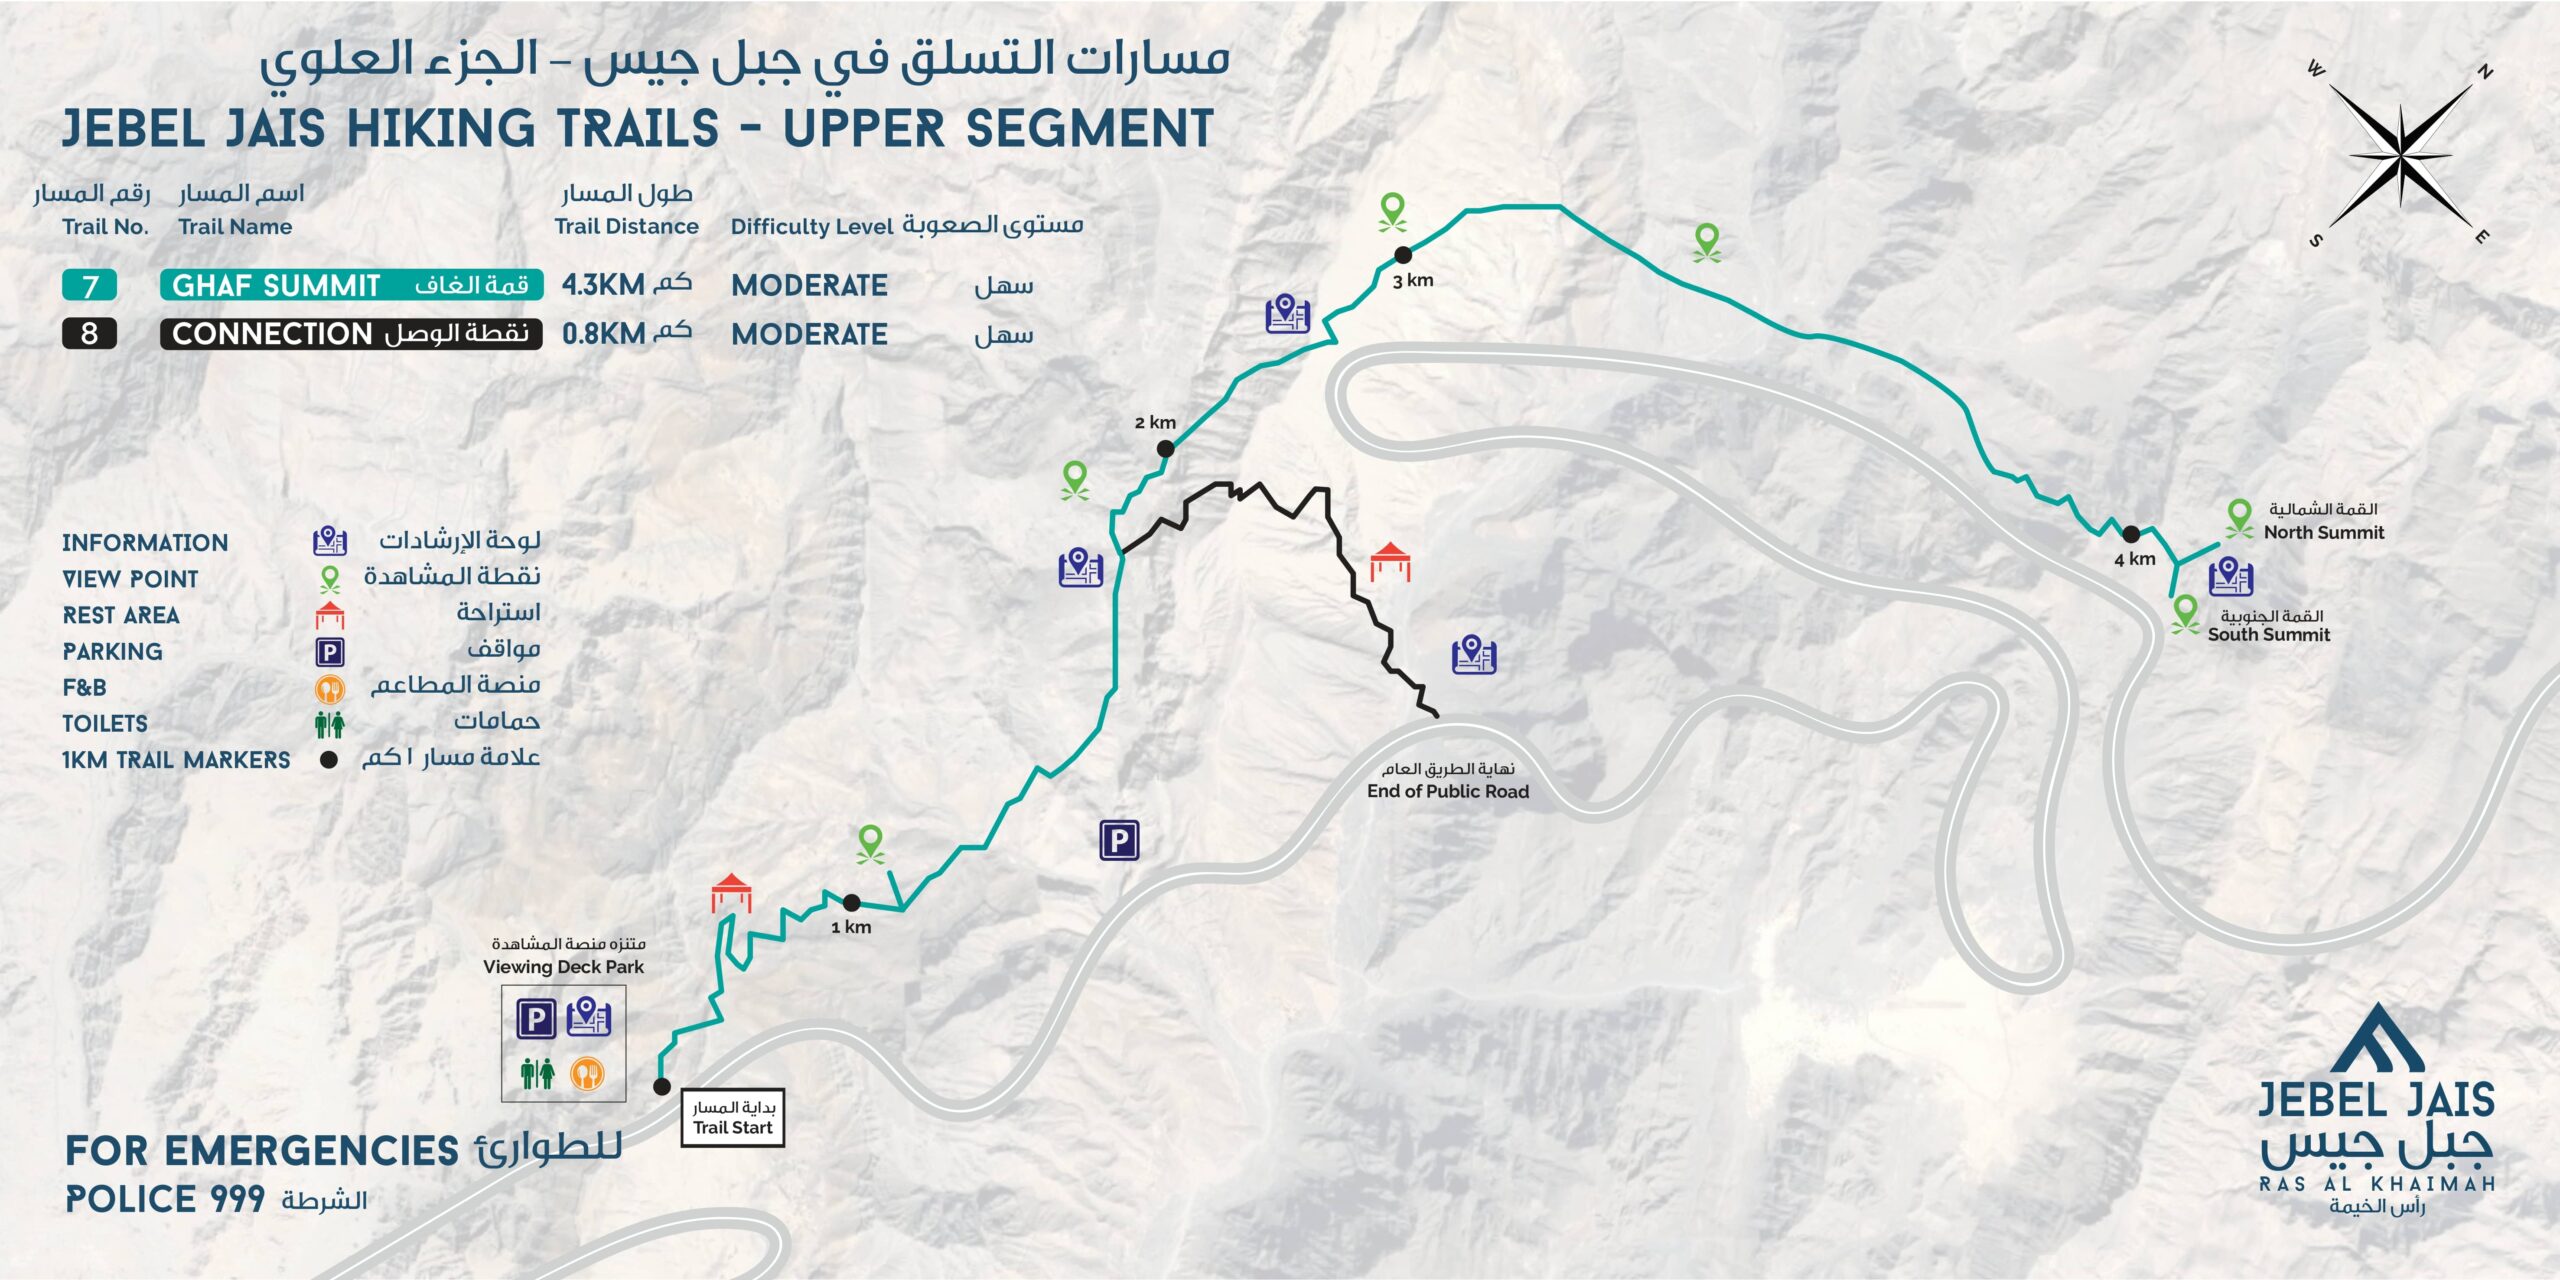 Jebal Jais Upper Segment Trail Map